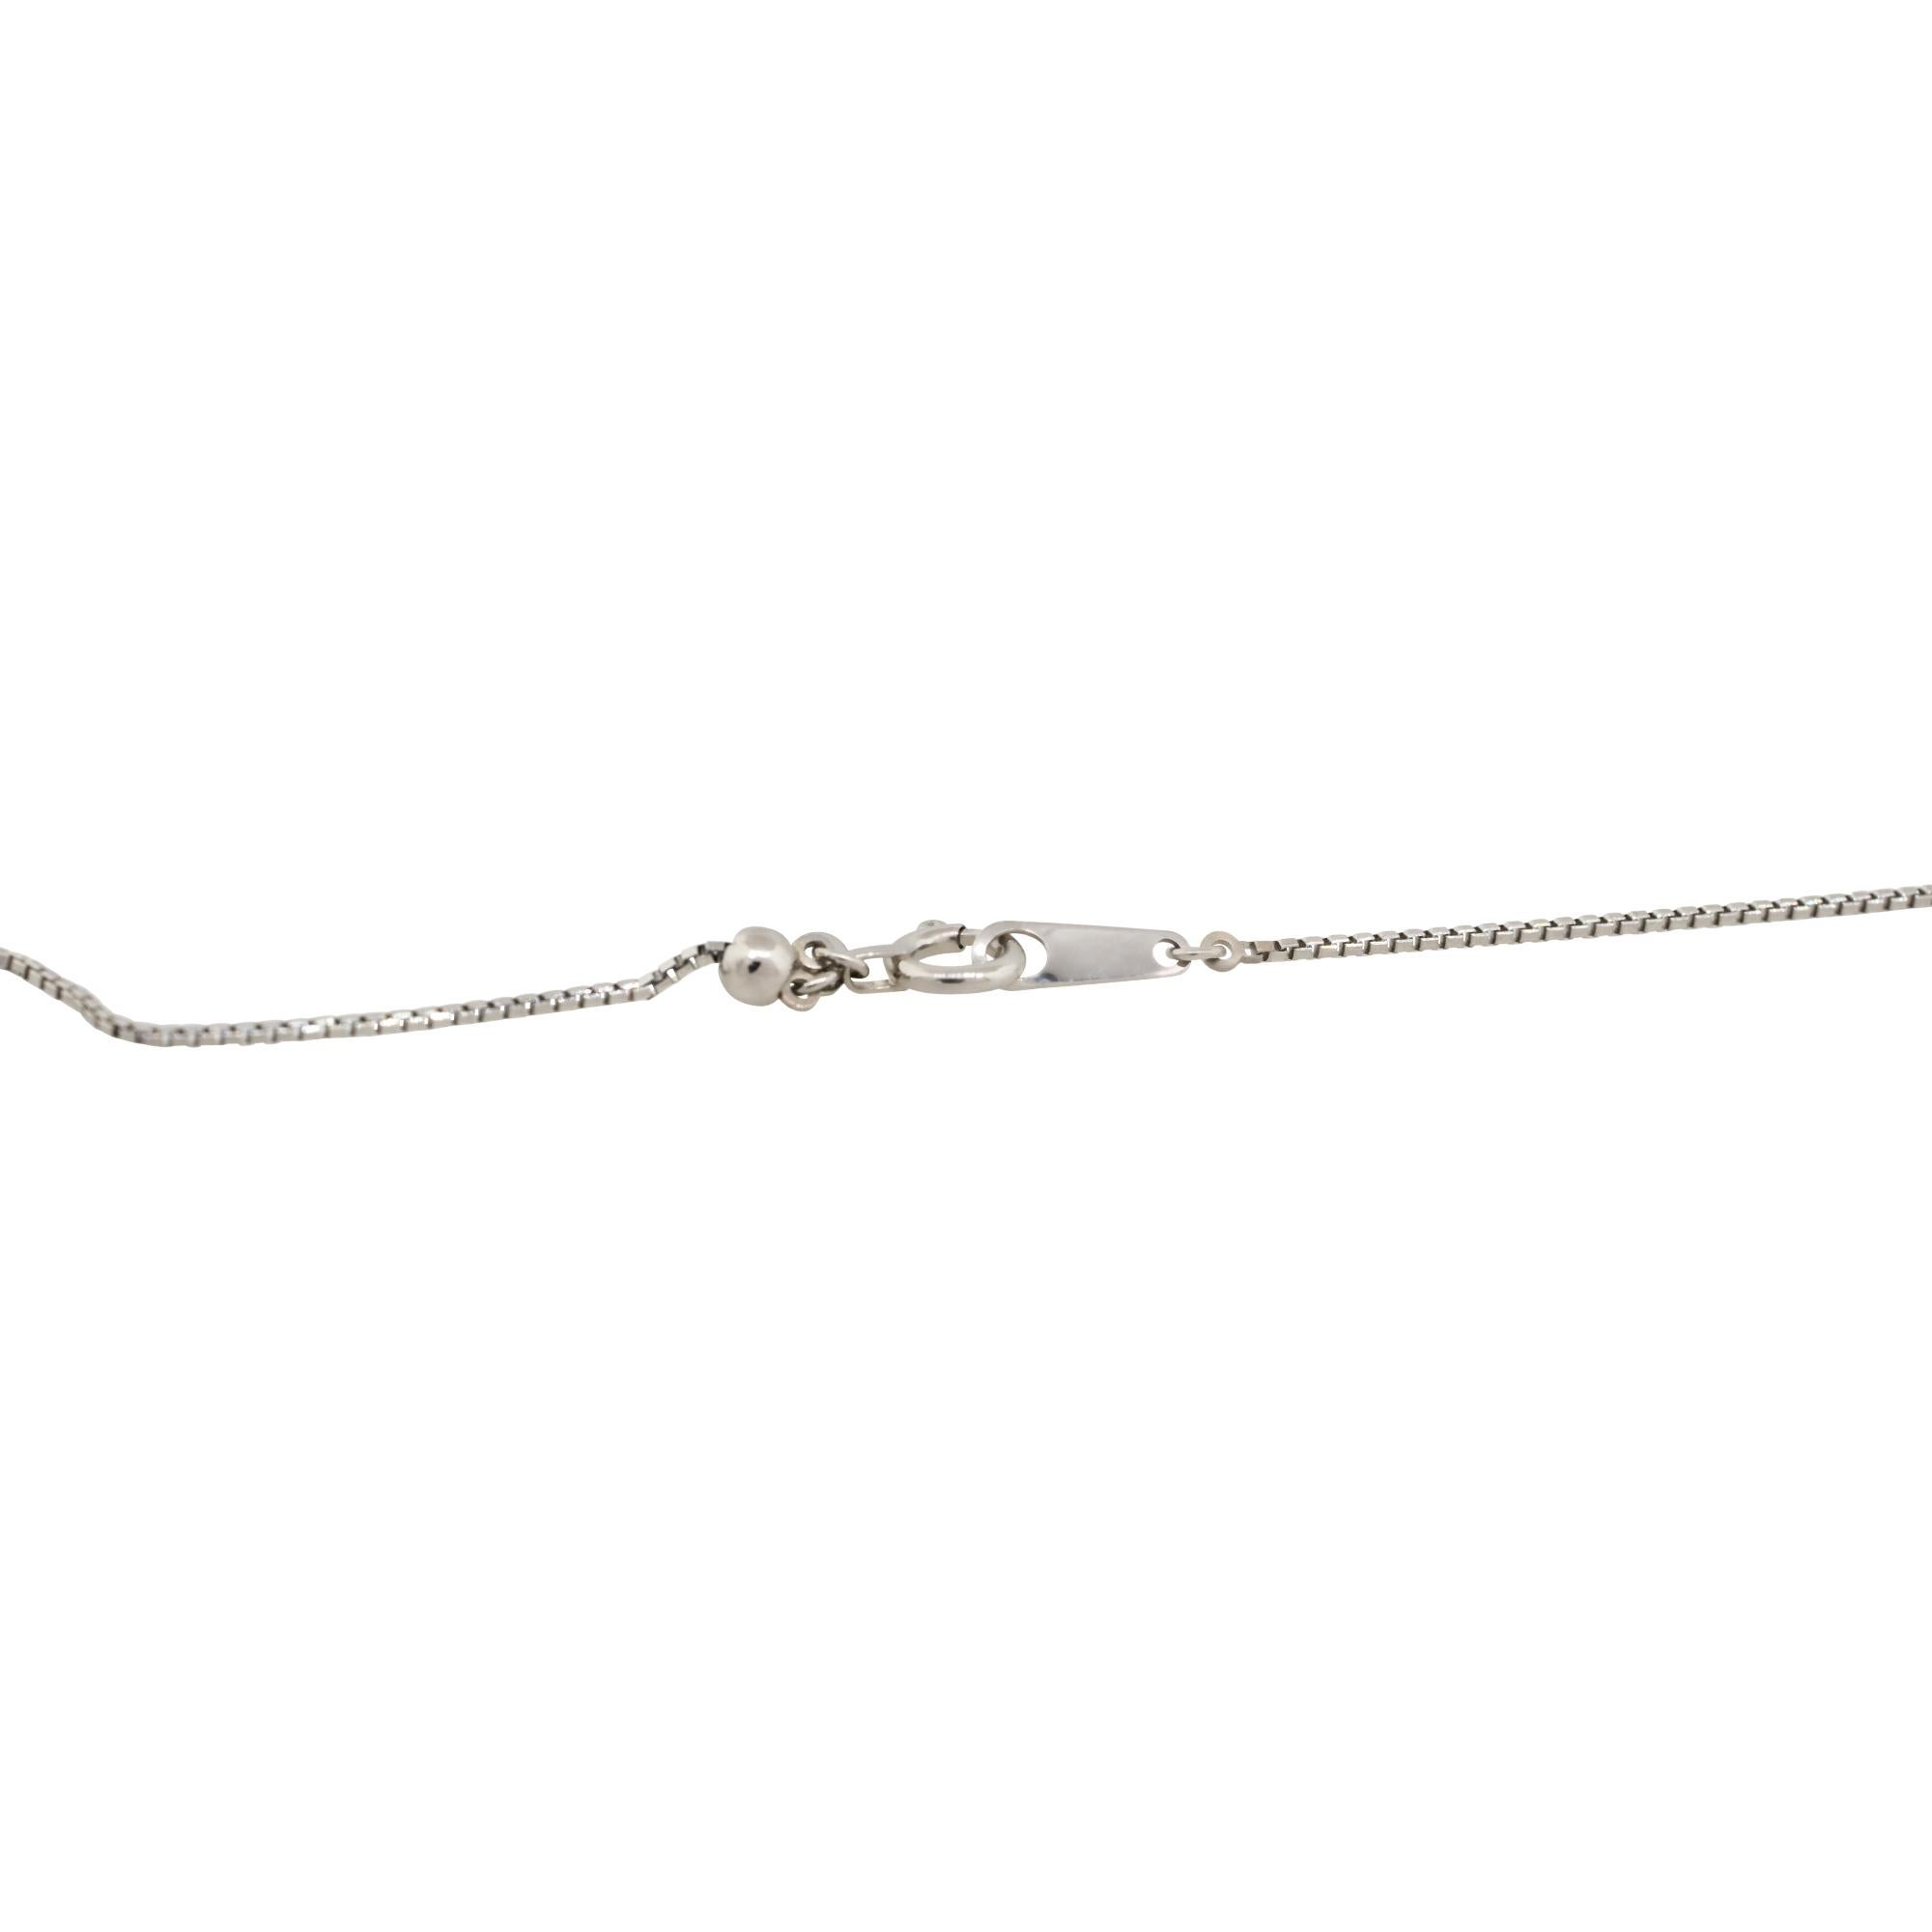 1.37 Carat Oval Cut Sapphire Pendant Necklace with Diamonds Platinum 1